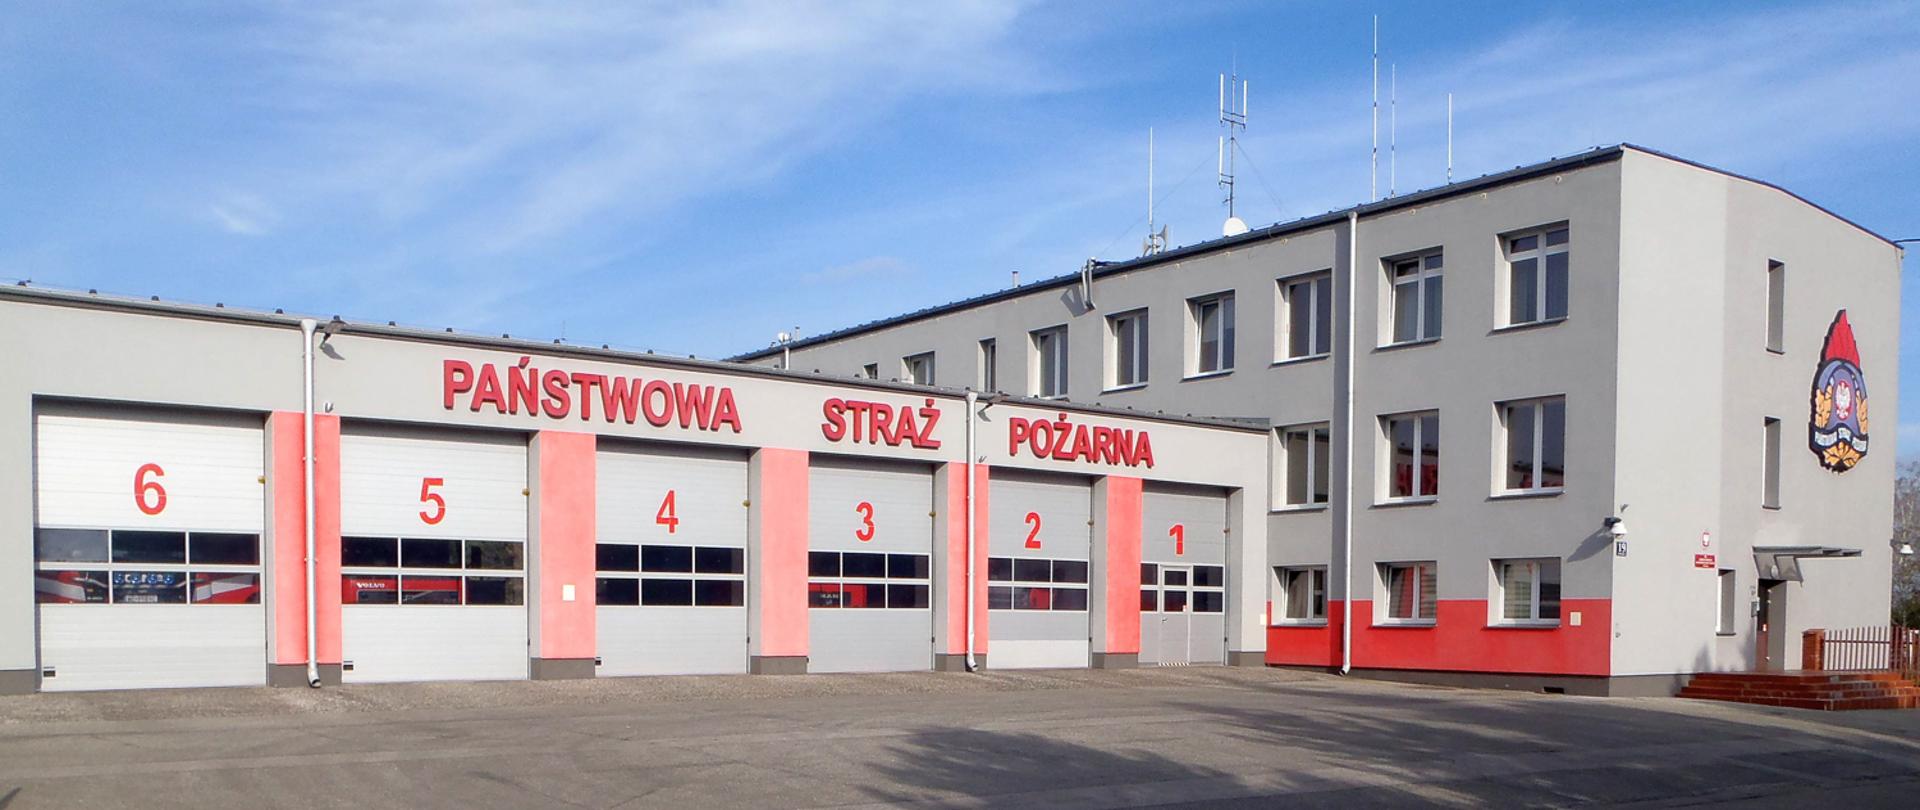 Zdjęcie przedstawia budynek Komendy Powiatowej PSP w Piasecznie w kolorze szaro-czerwonym. Na pierwszym planie bramy garażowe ponumerowane od 1 do 6. Z prawej strony zdjęcia wejście do siedziby piaseczyńskich strażaków.